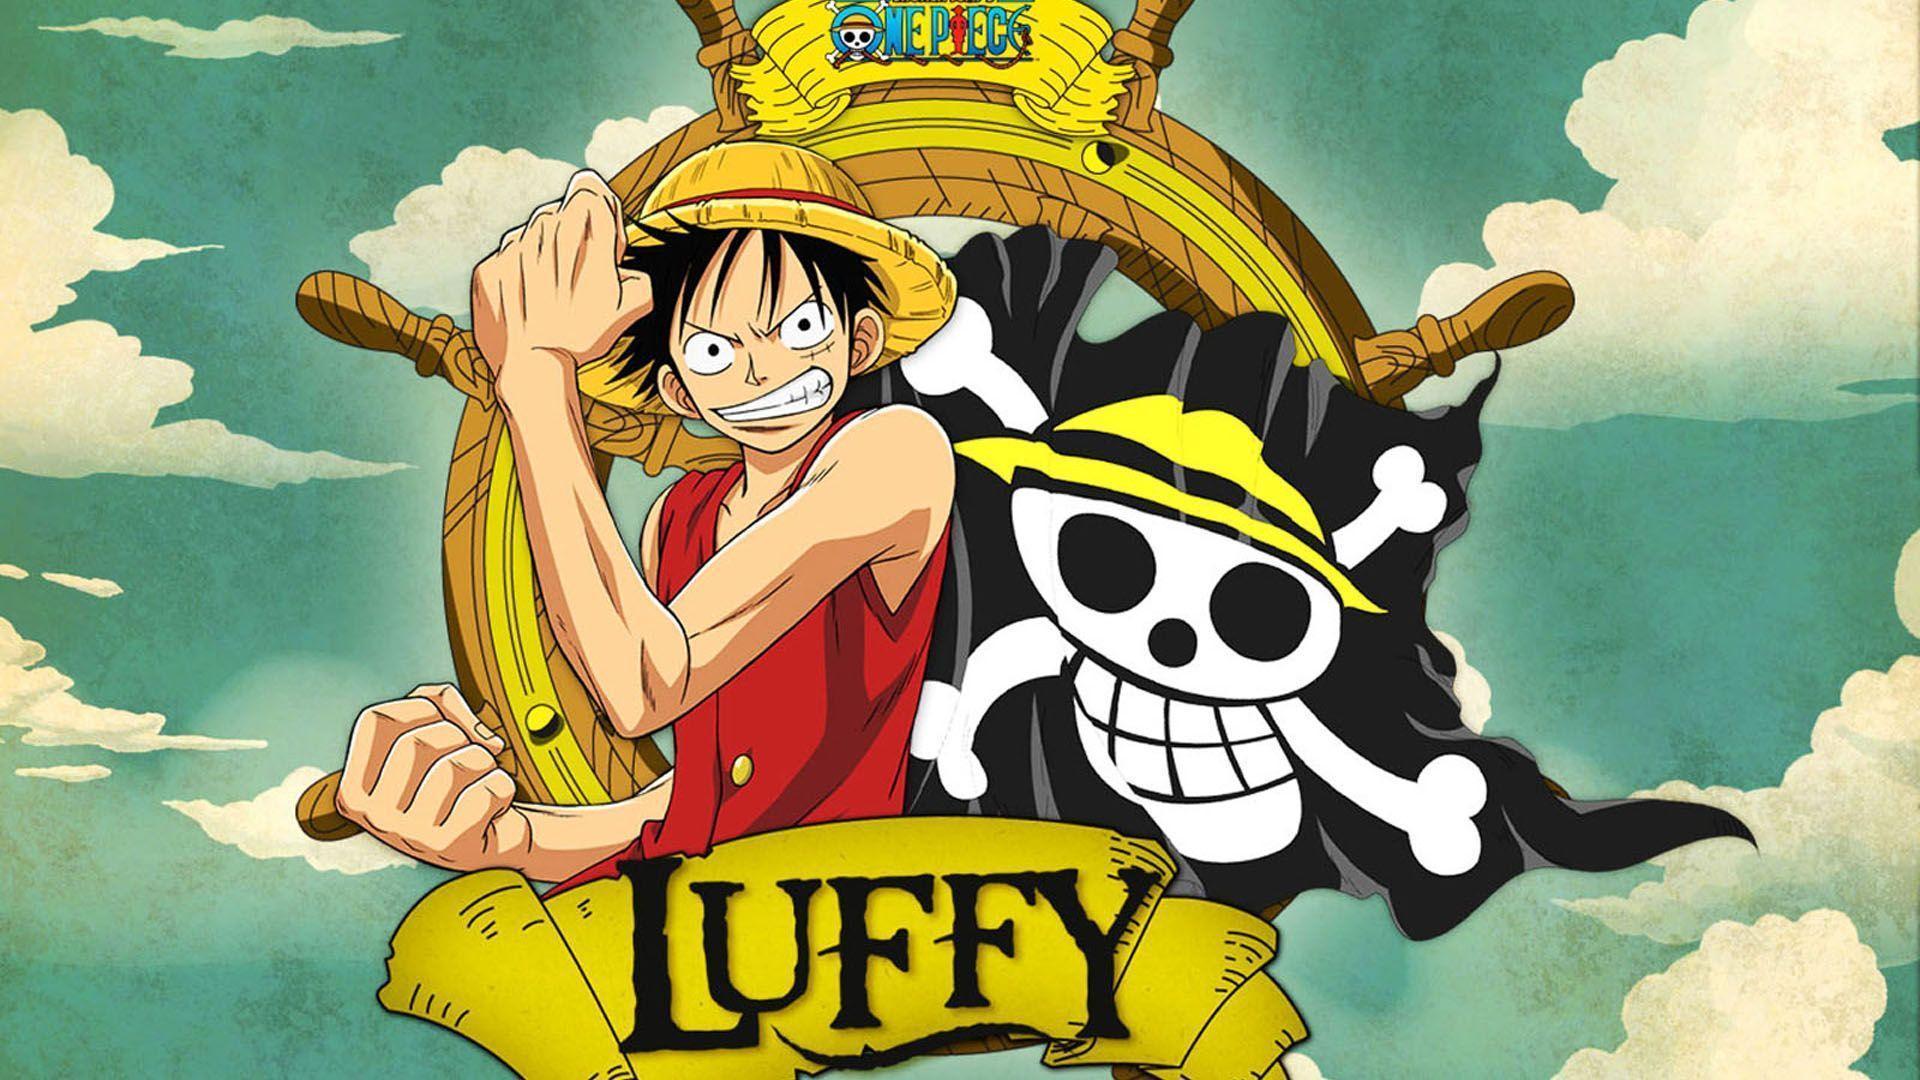 One Piece Luffy Wallpaper Hd - 1920x1080 Wallpaper 